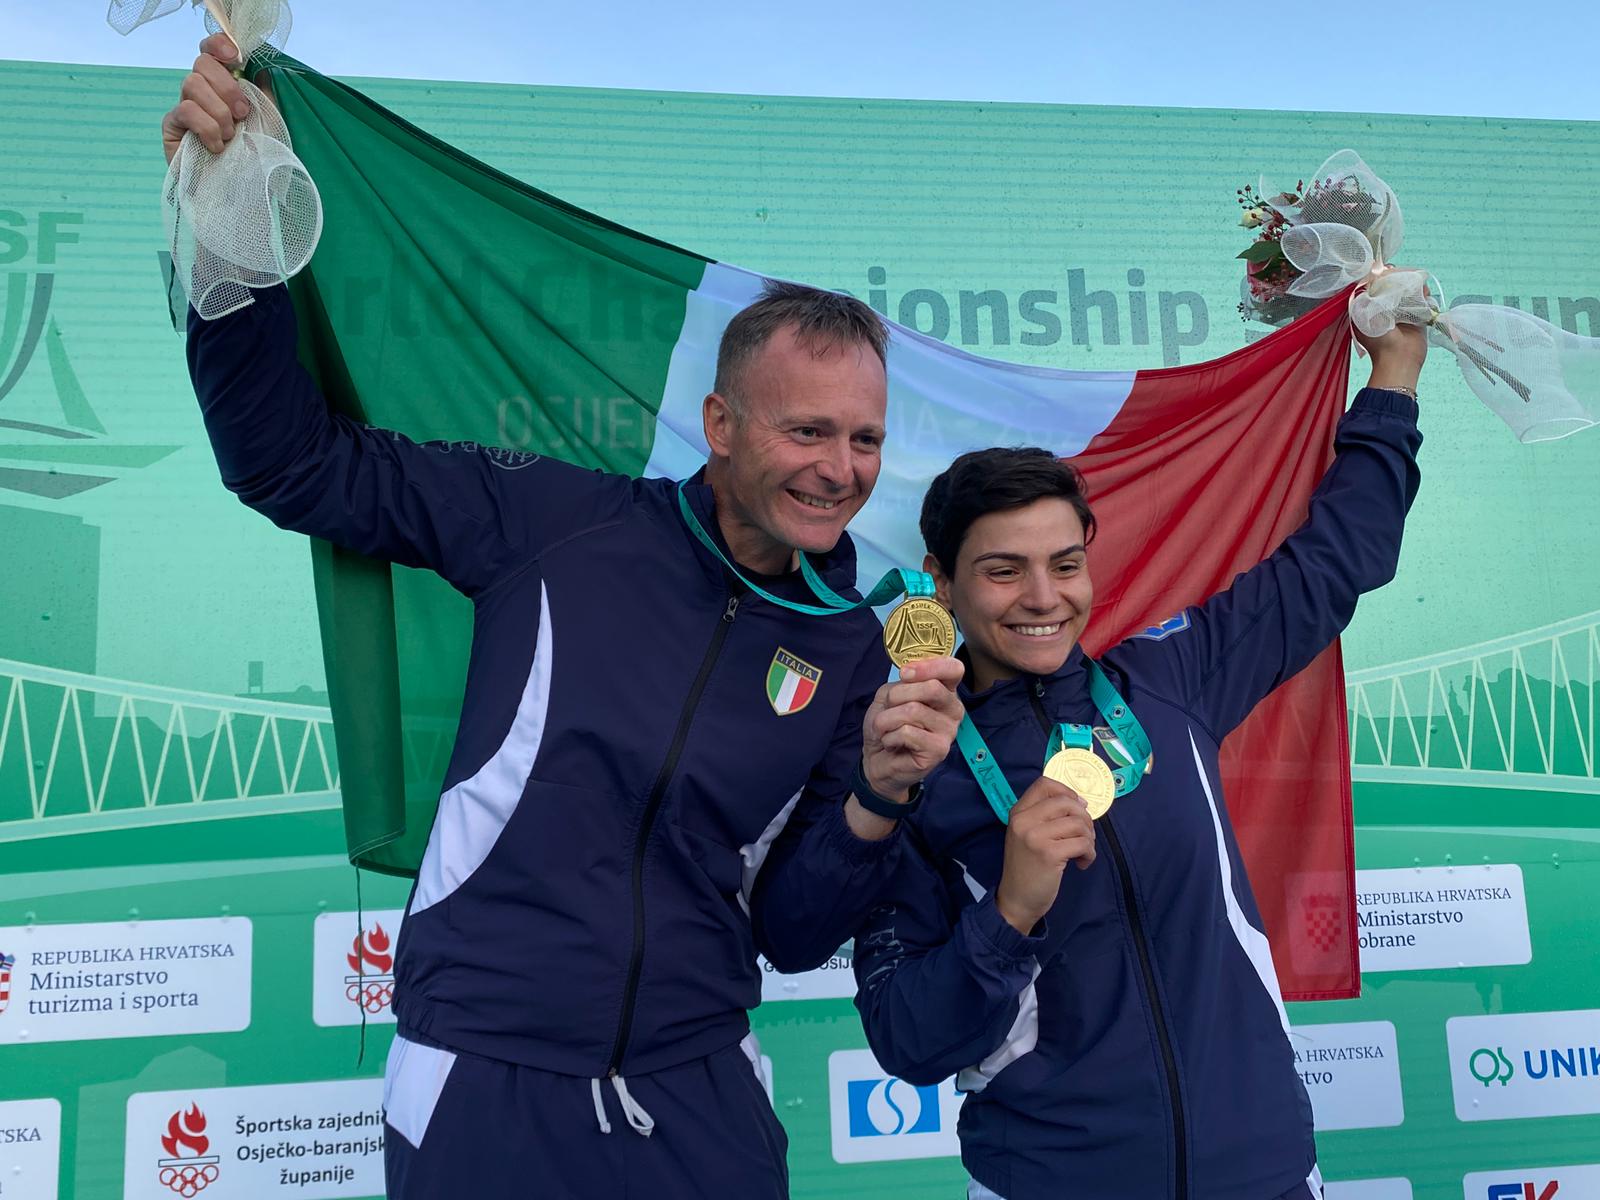 Grassia e De Filippis Campione del Mondo Mixed Team di Trap